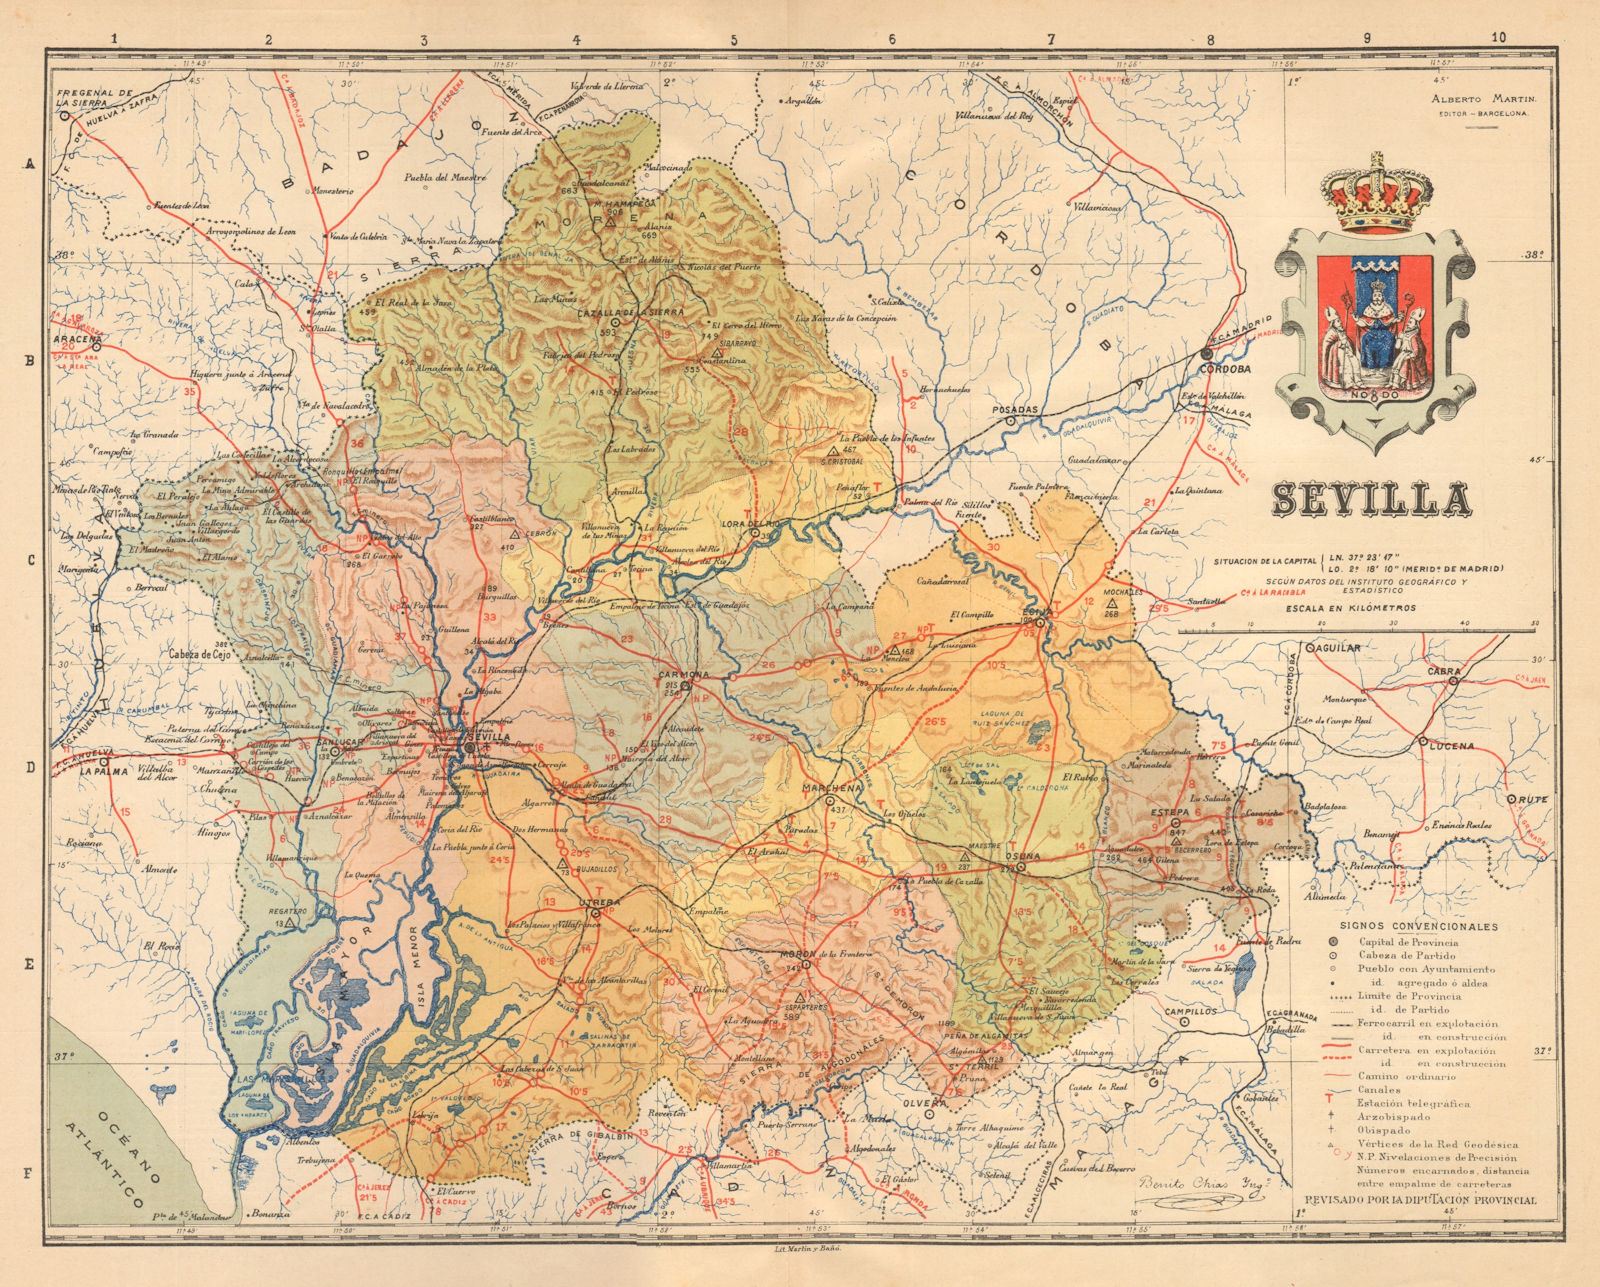 SEVILLA. Seville. Andalucia. Mapa antiguo de la provincia. ALBERTO MARTIN c1911